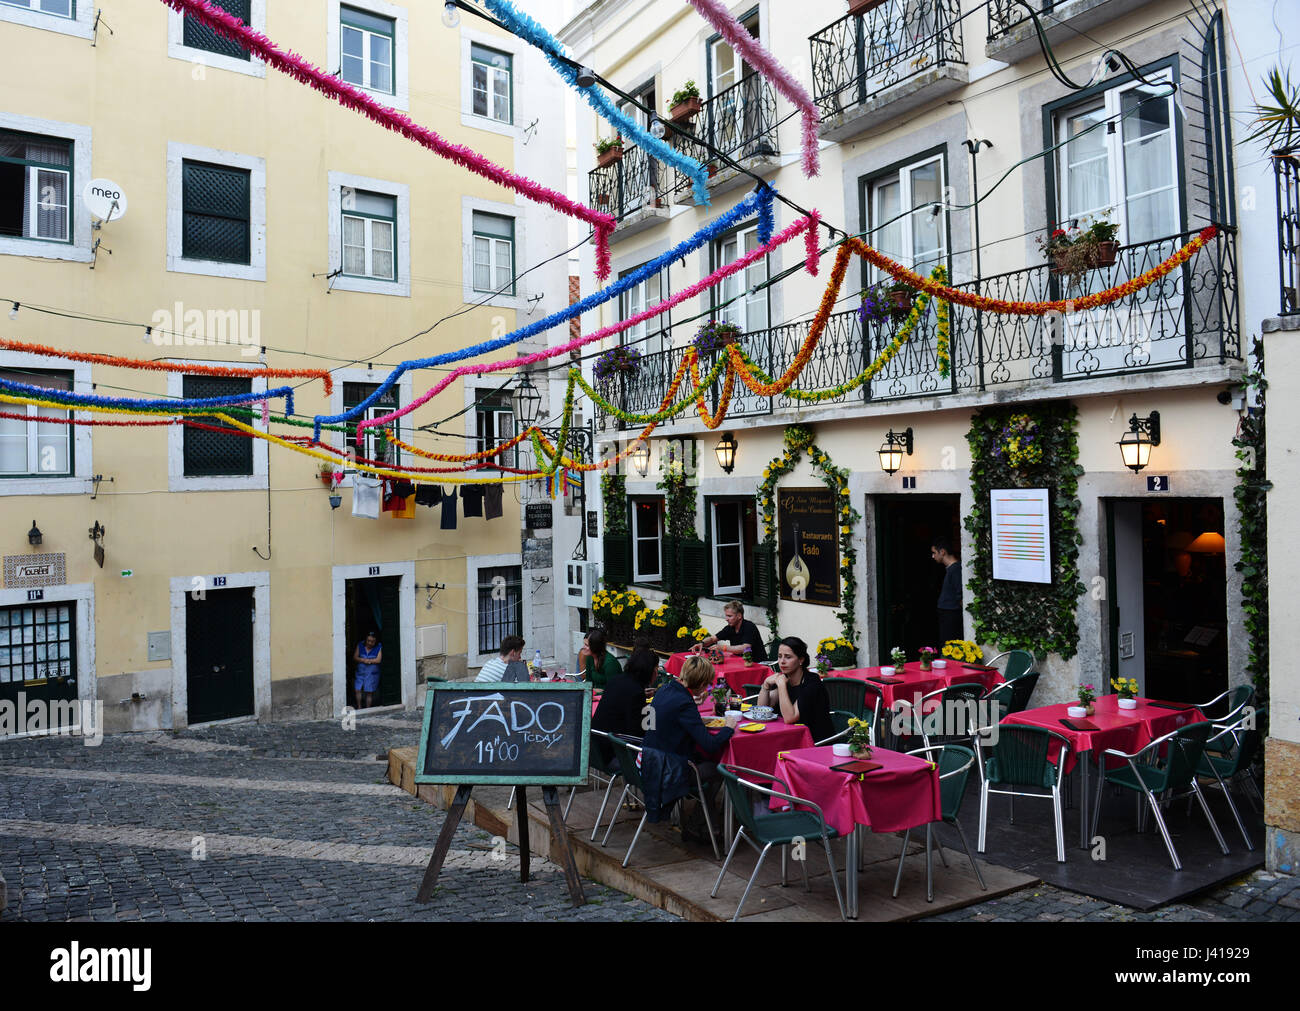 The old neighborhood of Alfama in Lisbon. Stock Photo